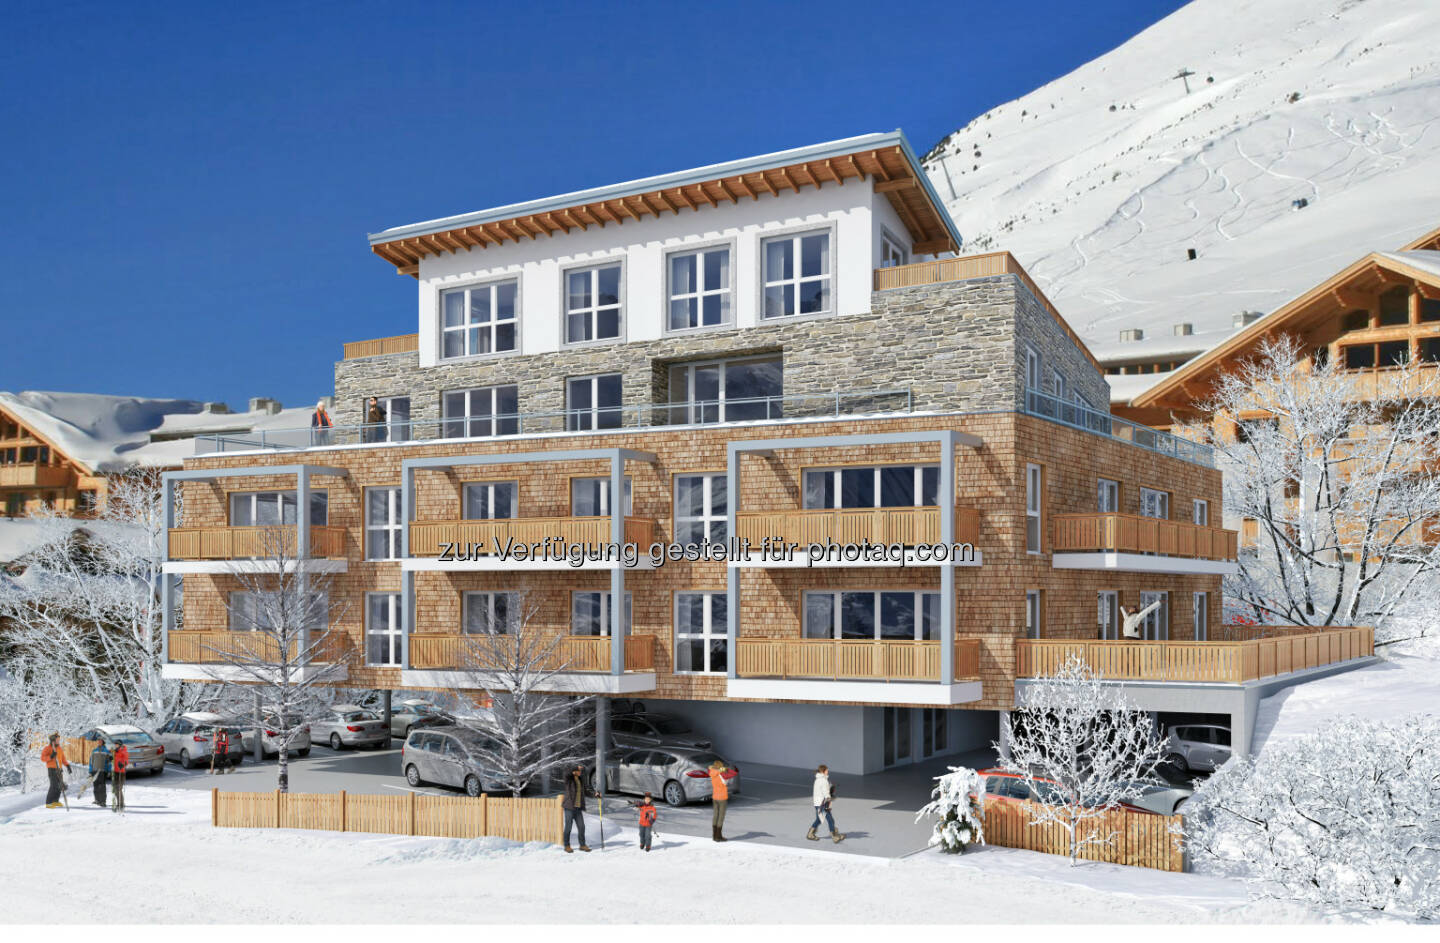 Kristall Spaces AG: Kristall Spaces verkauft exklusive Appartements in Kühtai, dem höchsten Wintersportort Tirols